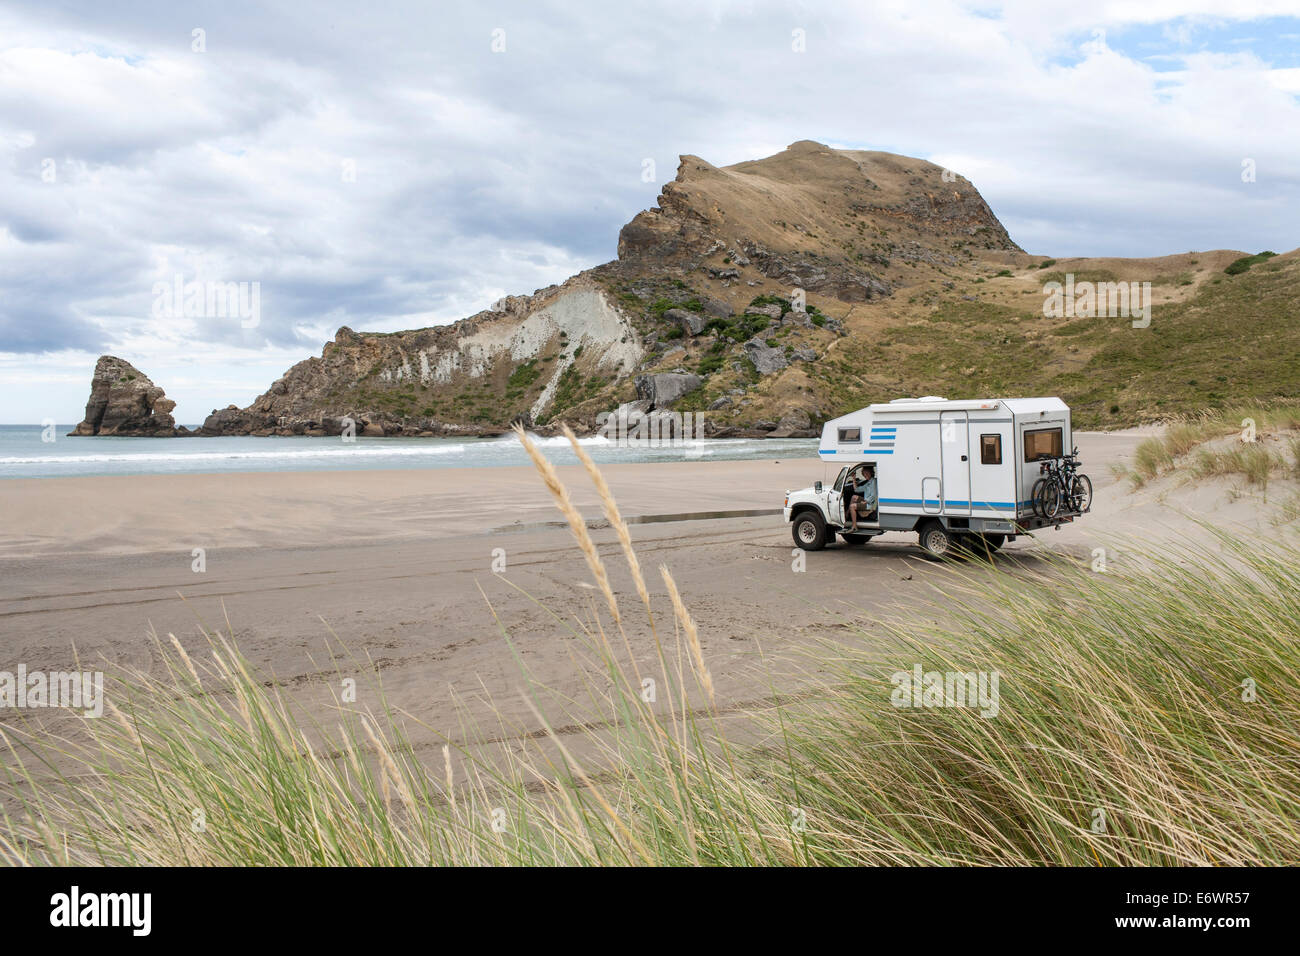 Le camping-car garé sur la plage à Castle Point, région de Wellington, Île du Nord, Nouvelle-Zélande Banque D'Images